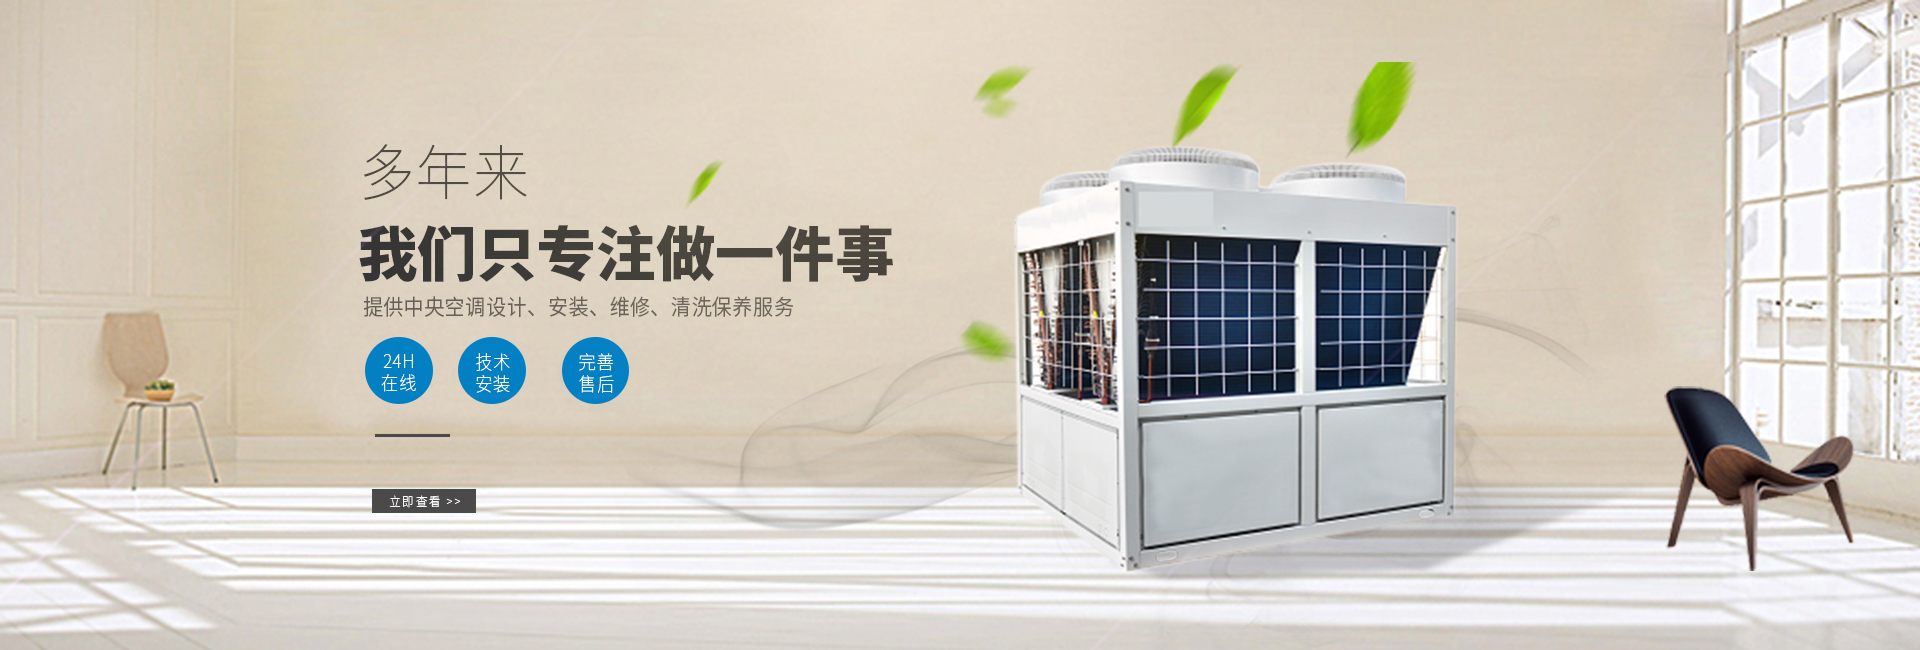 重慶中央空調維修保養